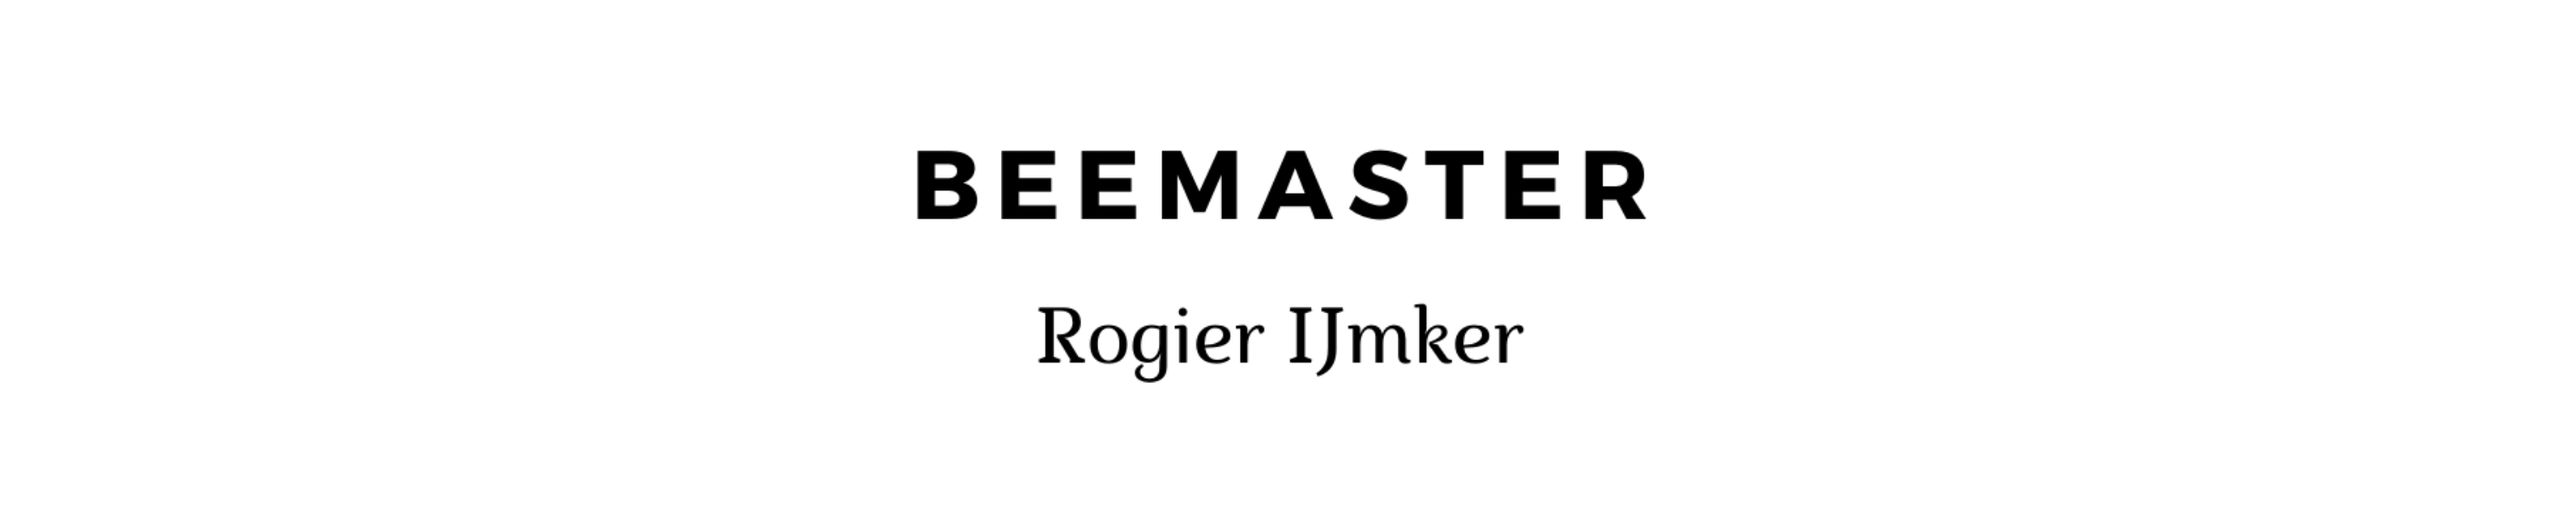 BeeMaster